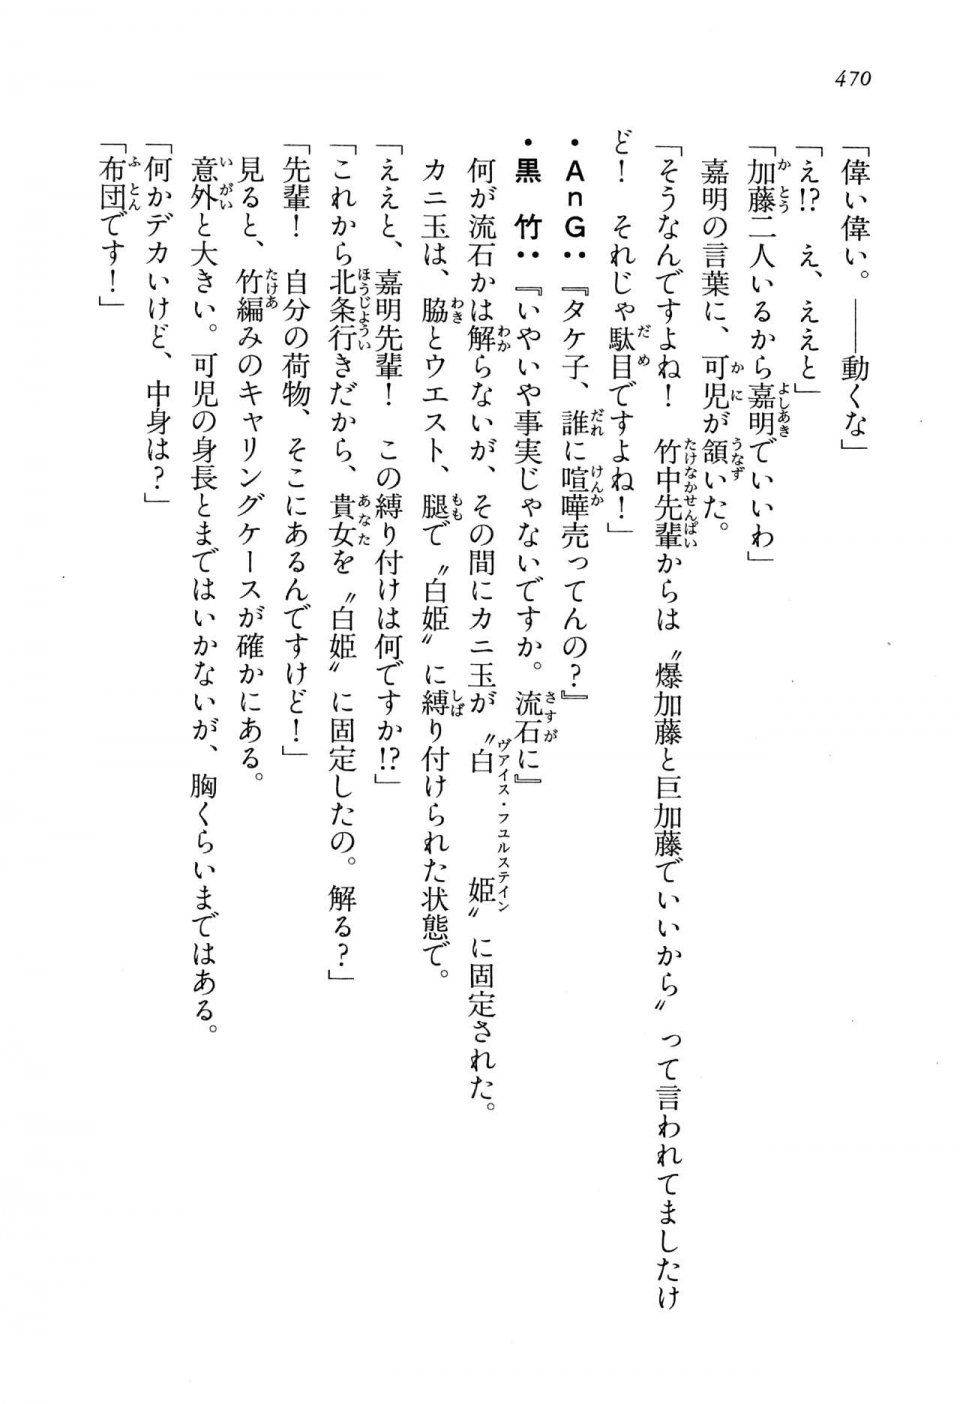 Kyoukai Senjou no Horizon LN Vol 13(6A) - Photo #470